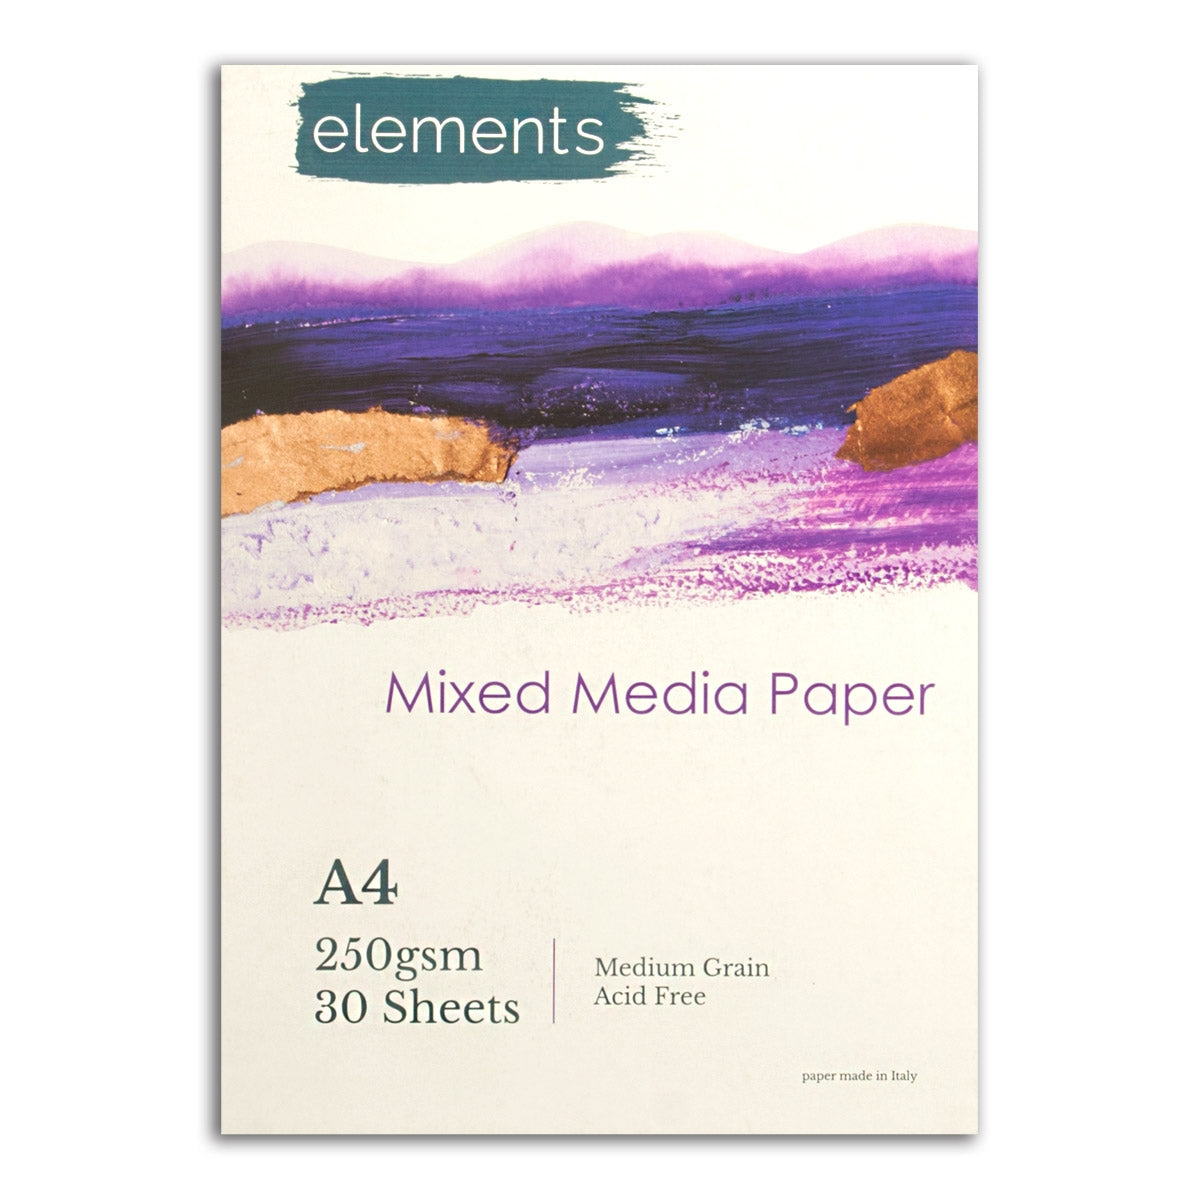 Elements Mixed Media Pad - 250gsm - 30 feuilles - A4